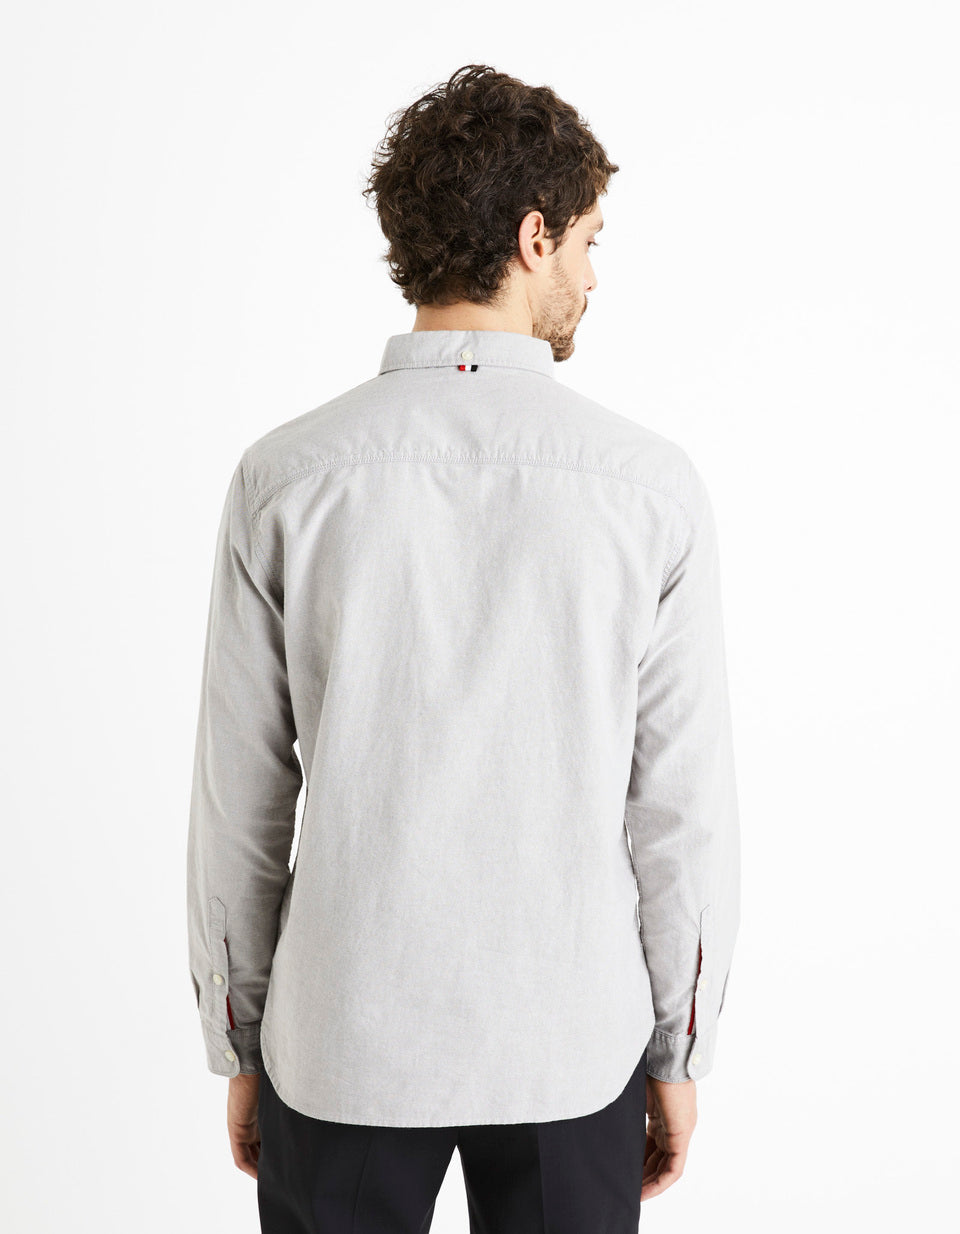 Regular-Fit 100% Cotton Shirt - Gray - 02